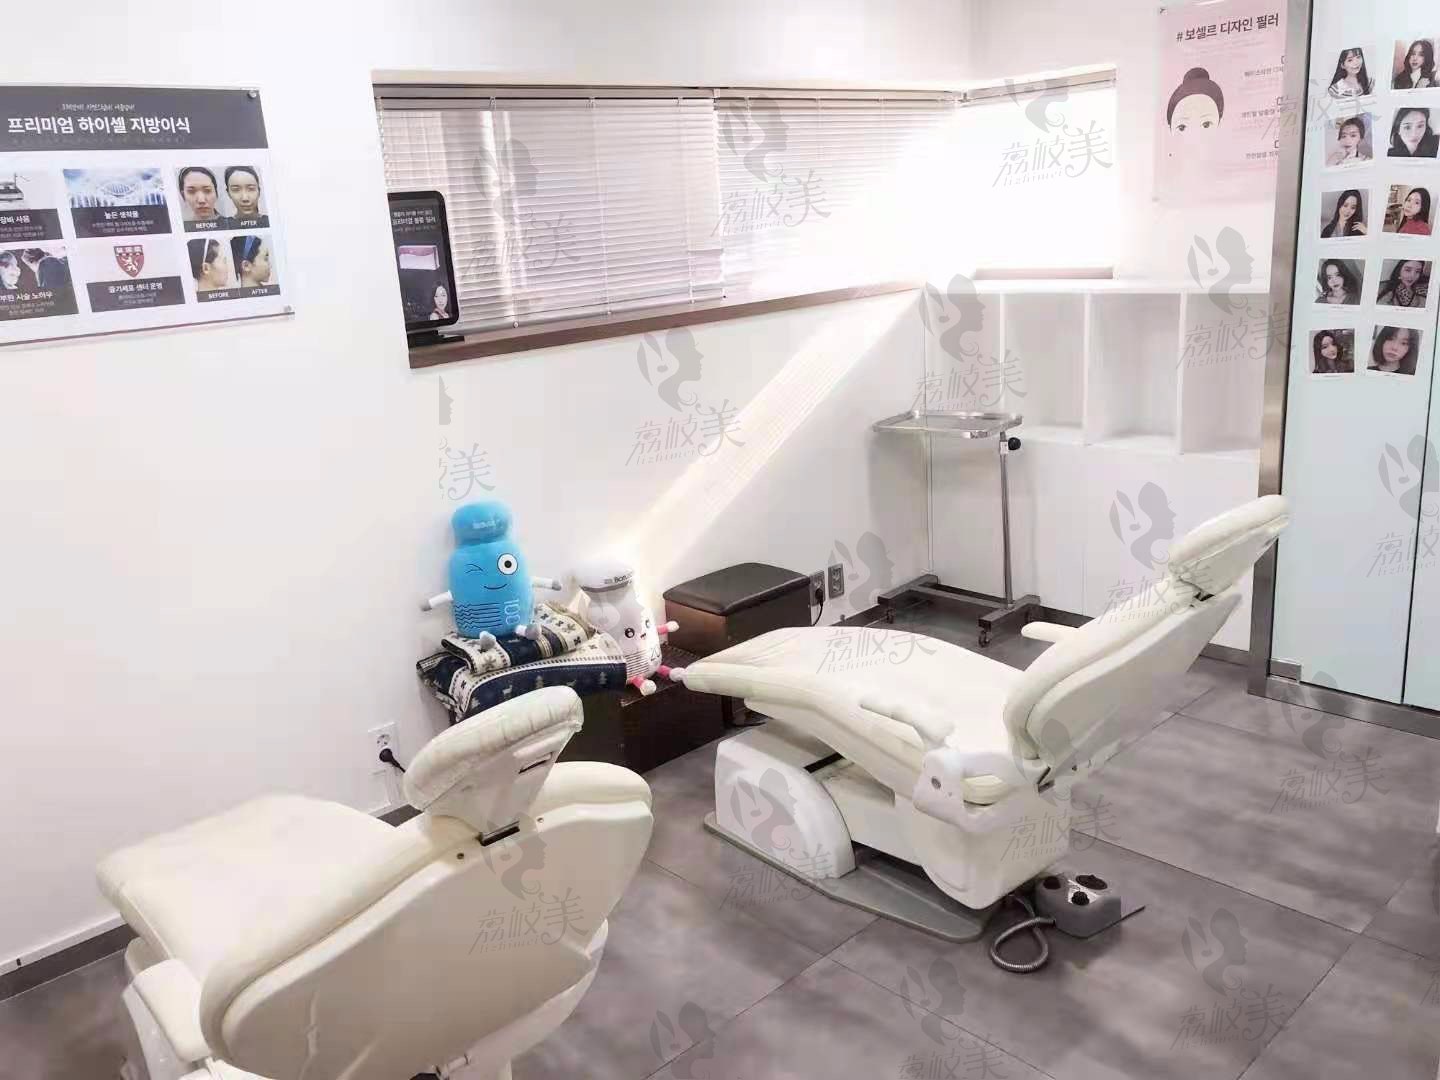 韩国宝士丽整形外科医院治疗室